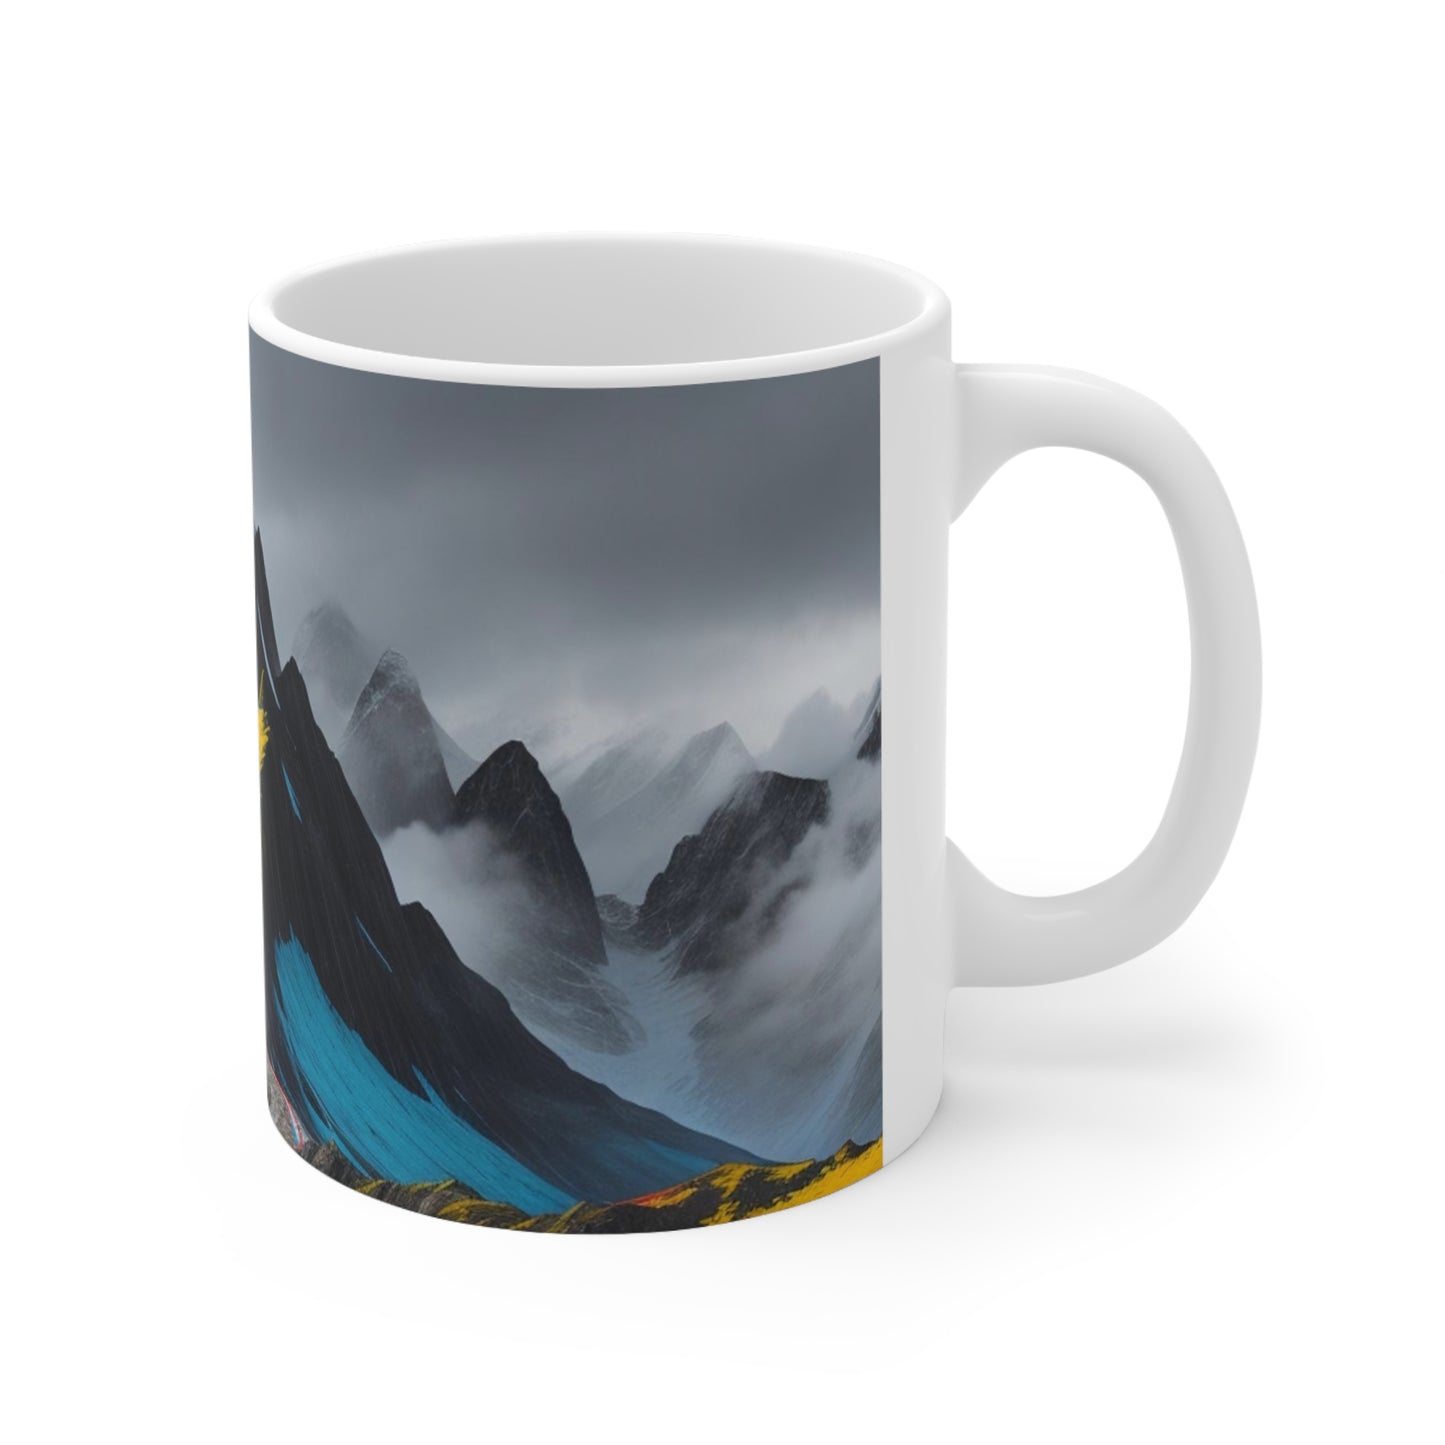 Colourful Scenic Mountain Mug - Ceramic Coffee Mug 11oz